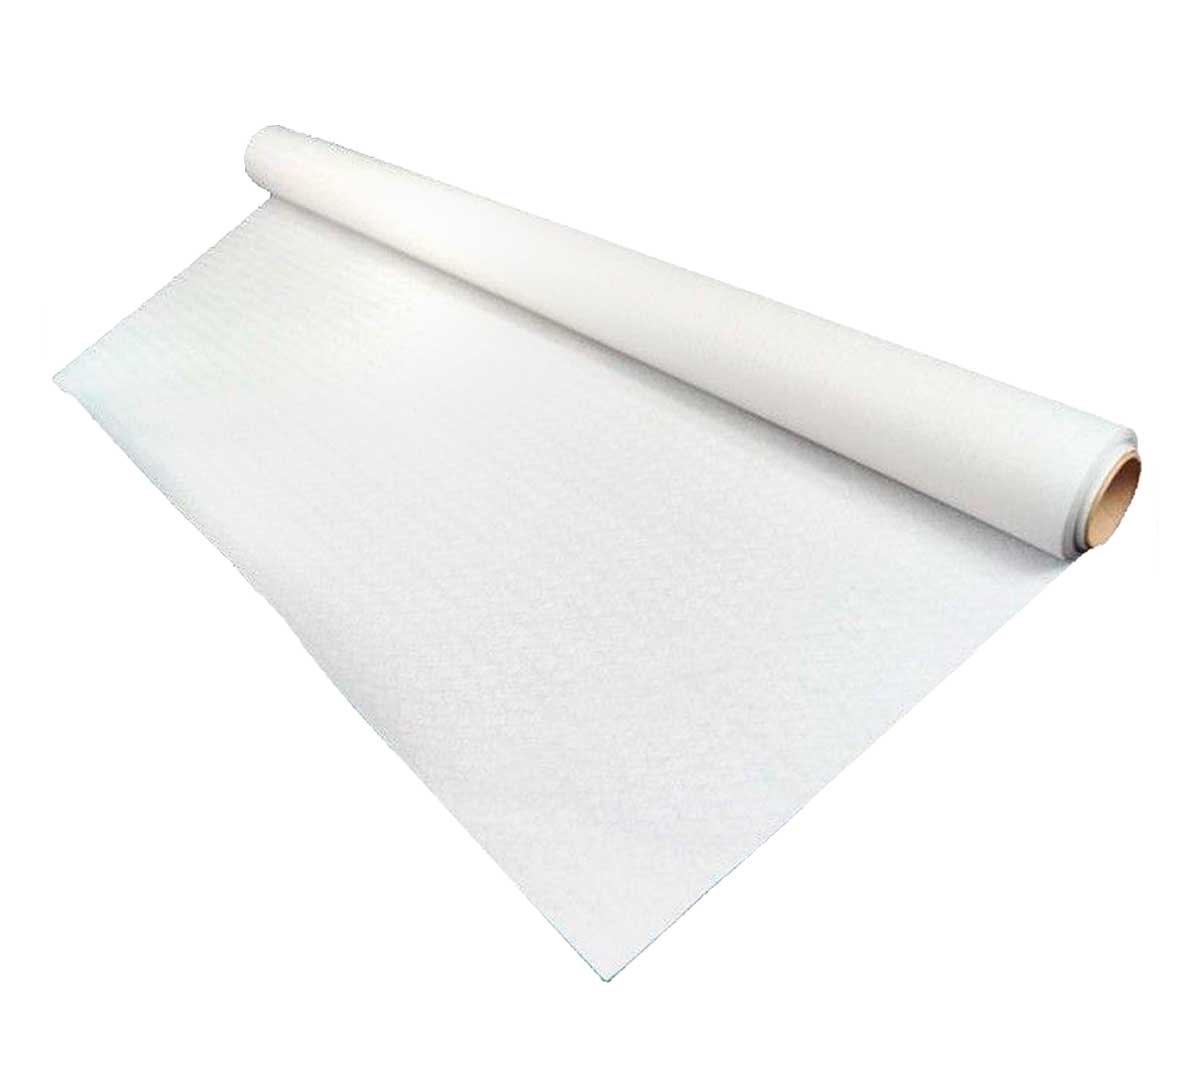 https://hosteleria10.com/recursos/fotos/karme-nature-rollo-mantel-papel-blanco-01.jpg